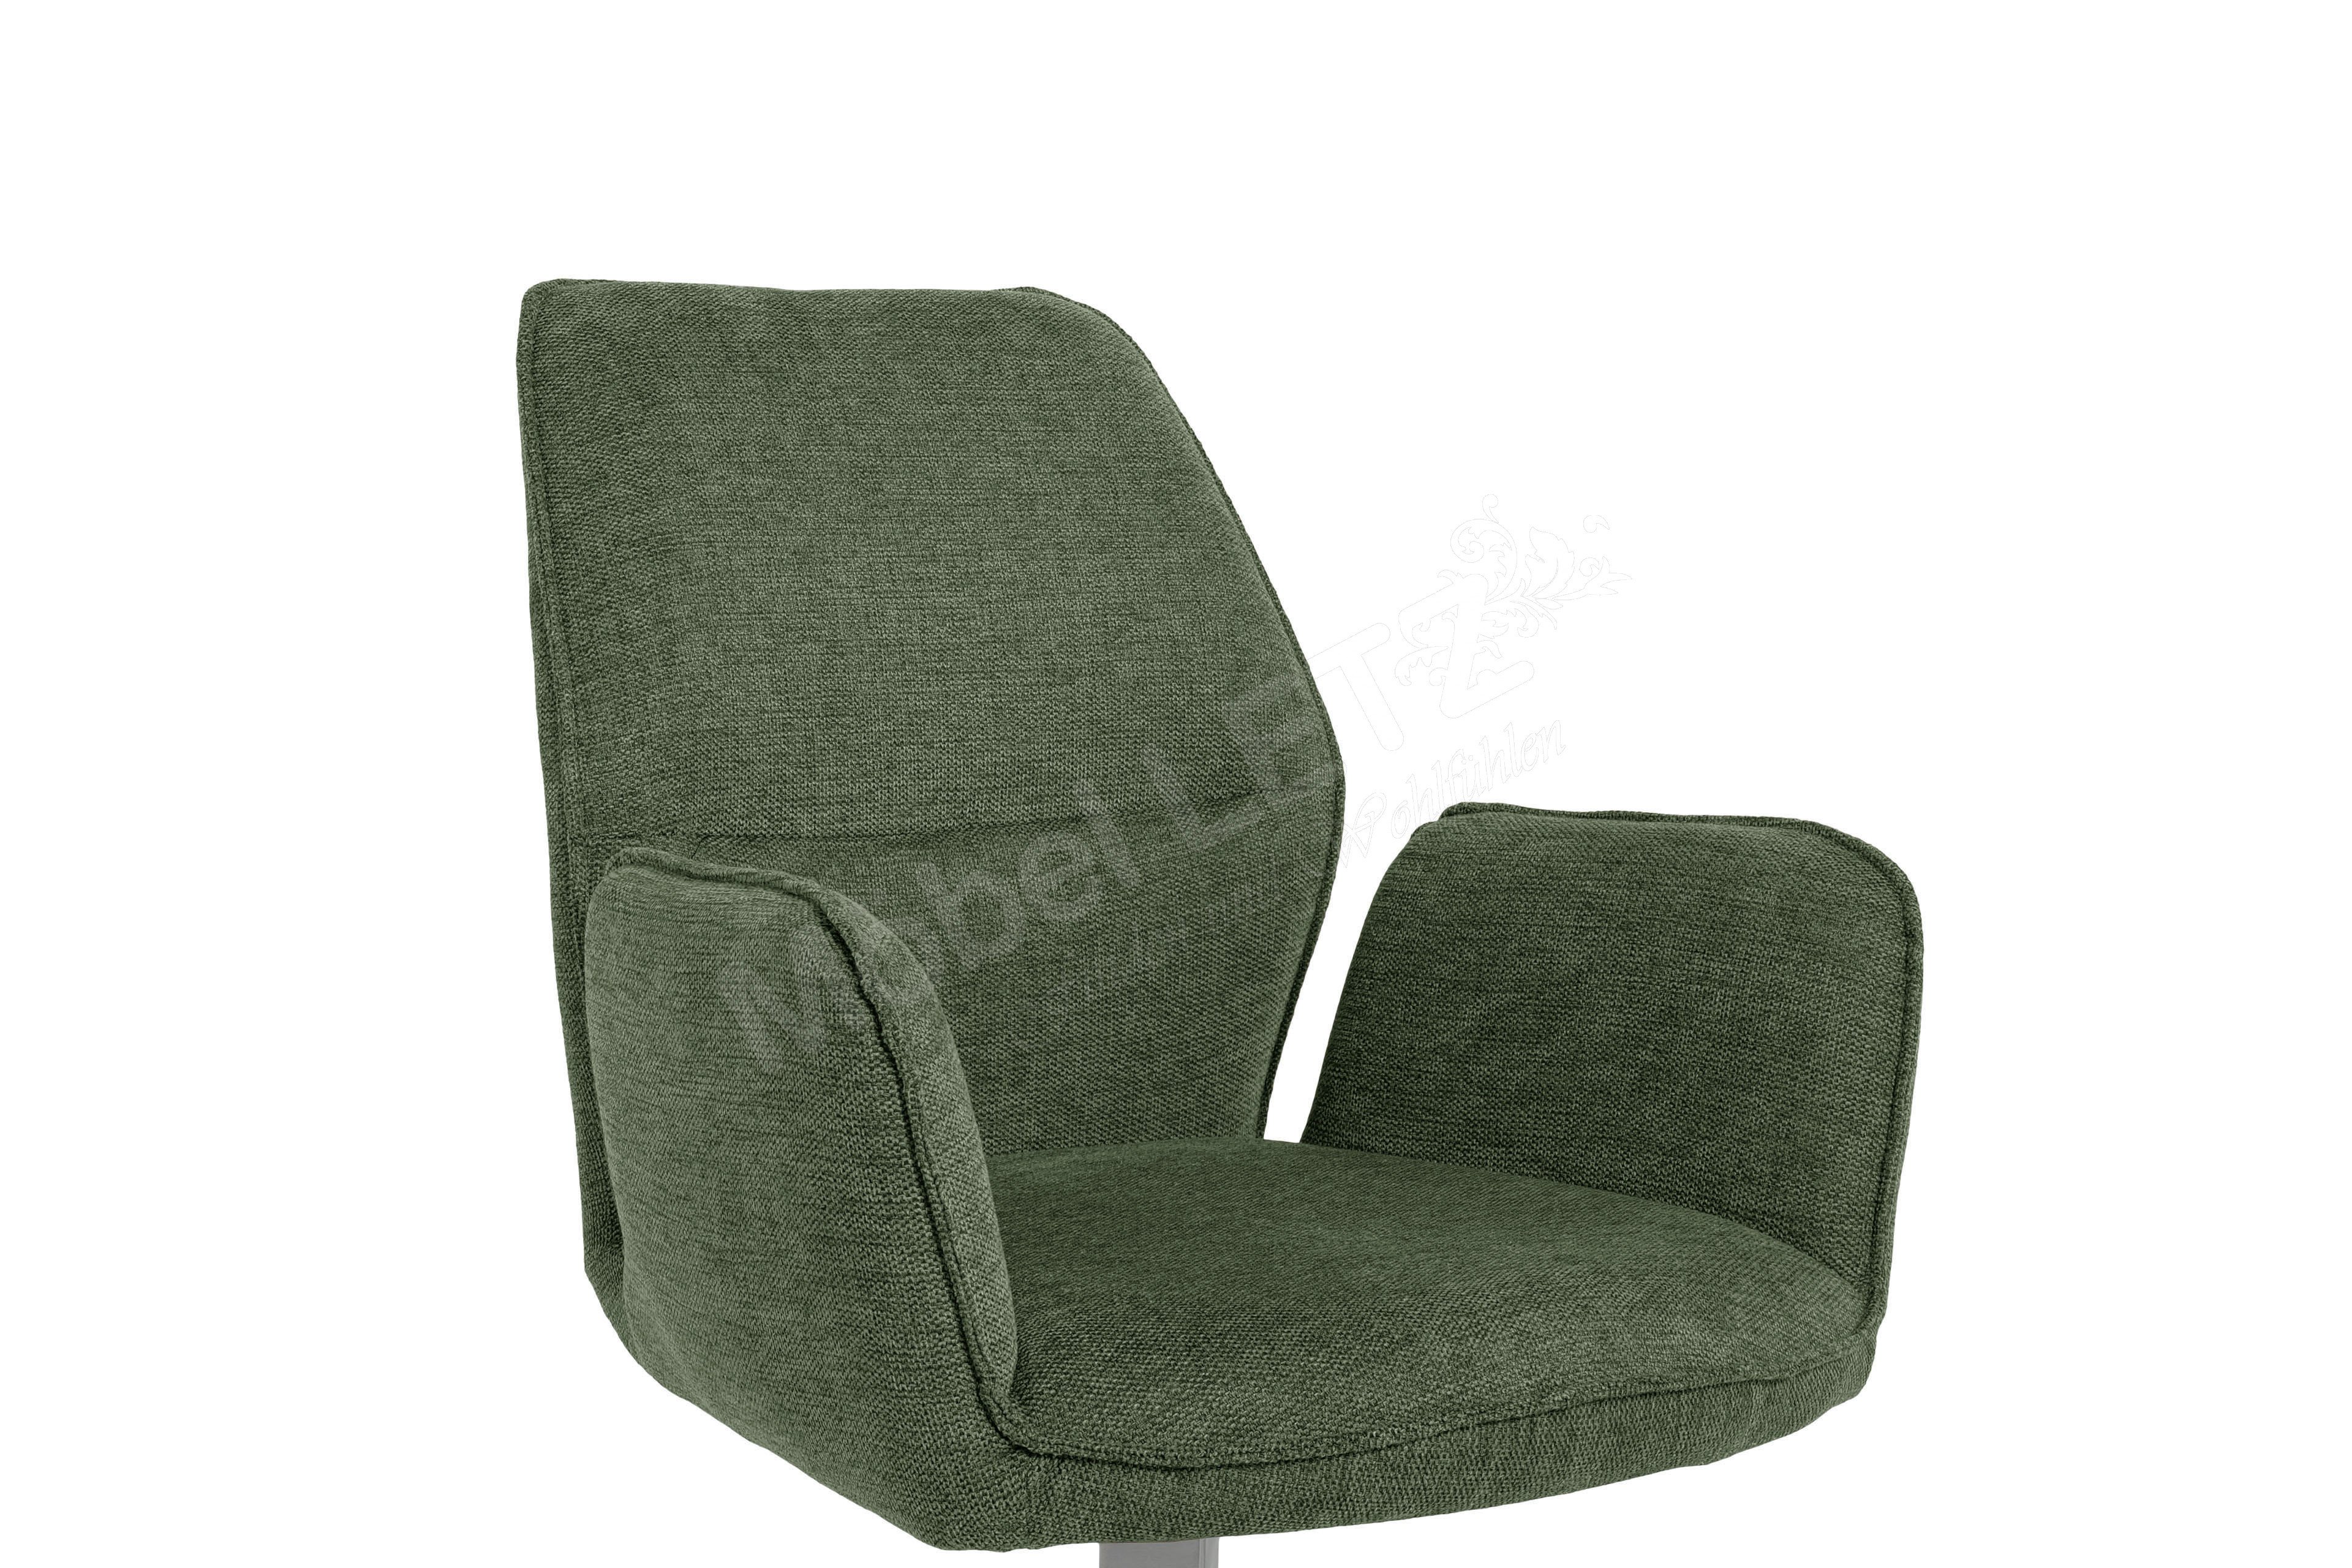 MCA furniture Stuhl Greyton in Olive-Grün | Möbel Letz - Ihr Online-Shop